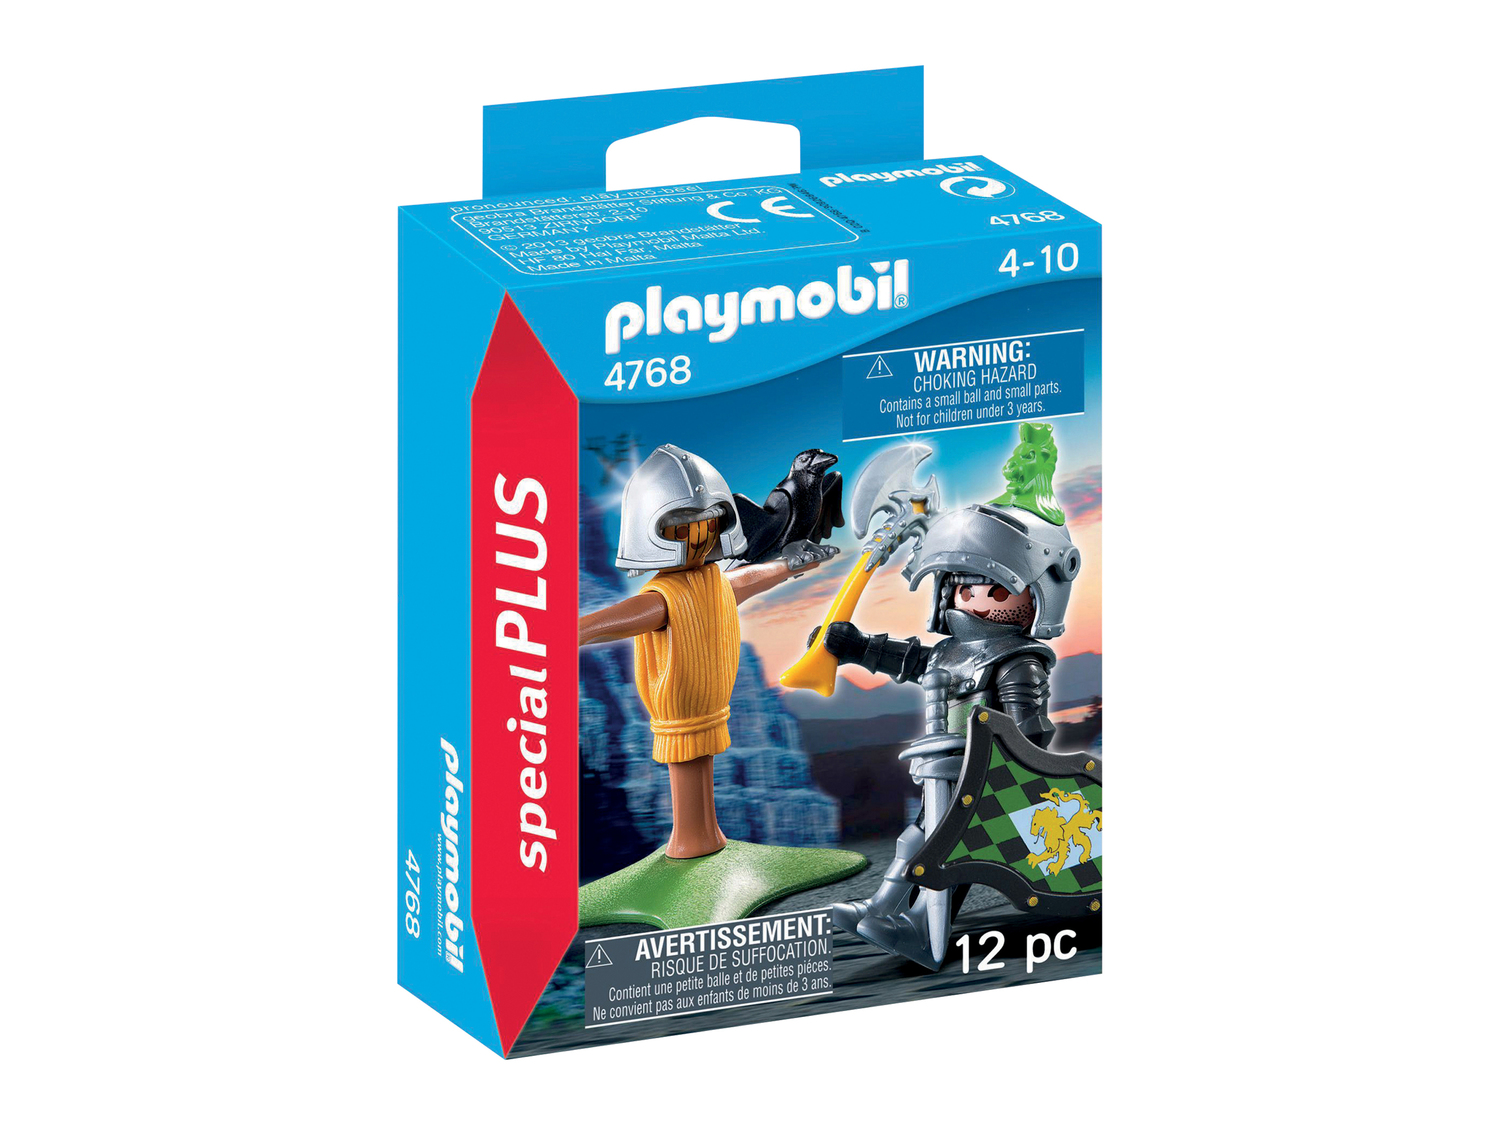 Personaggi Playmobil Special Plus Playmobil, prezzo 3.99 €  

Caratteristiche